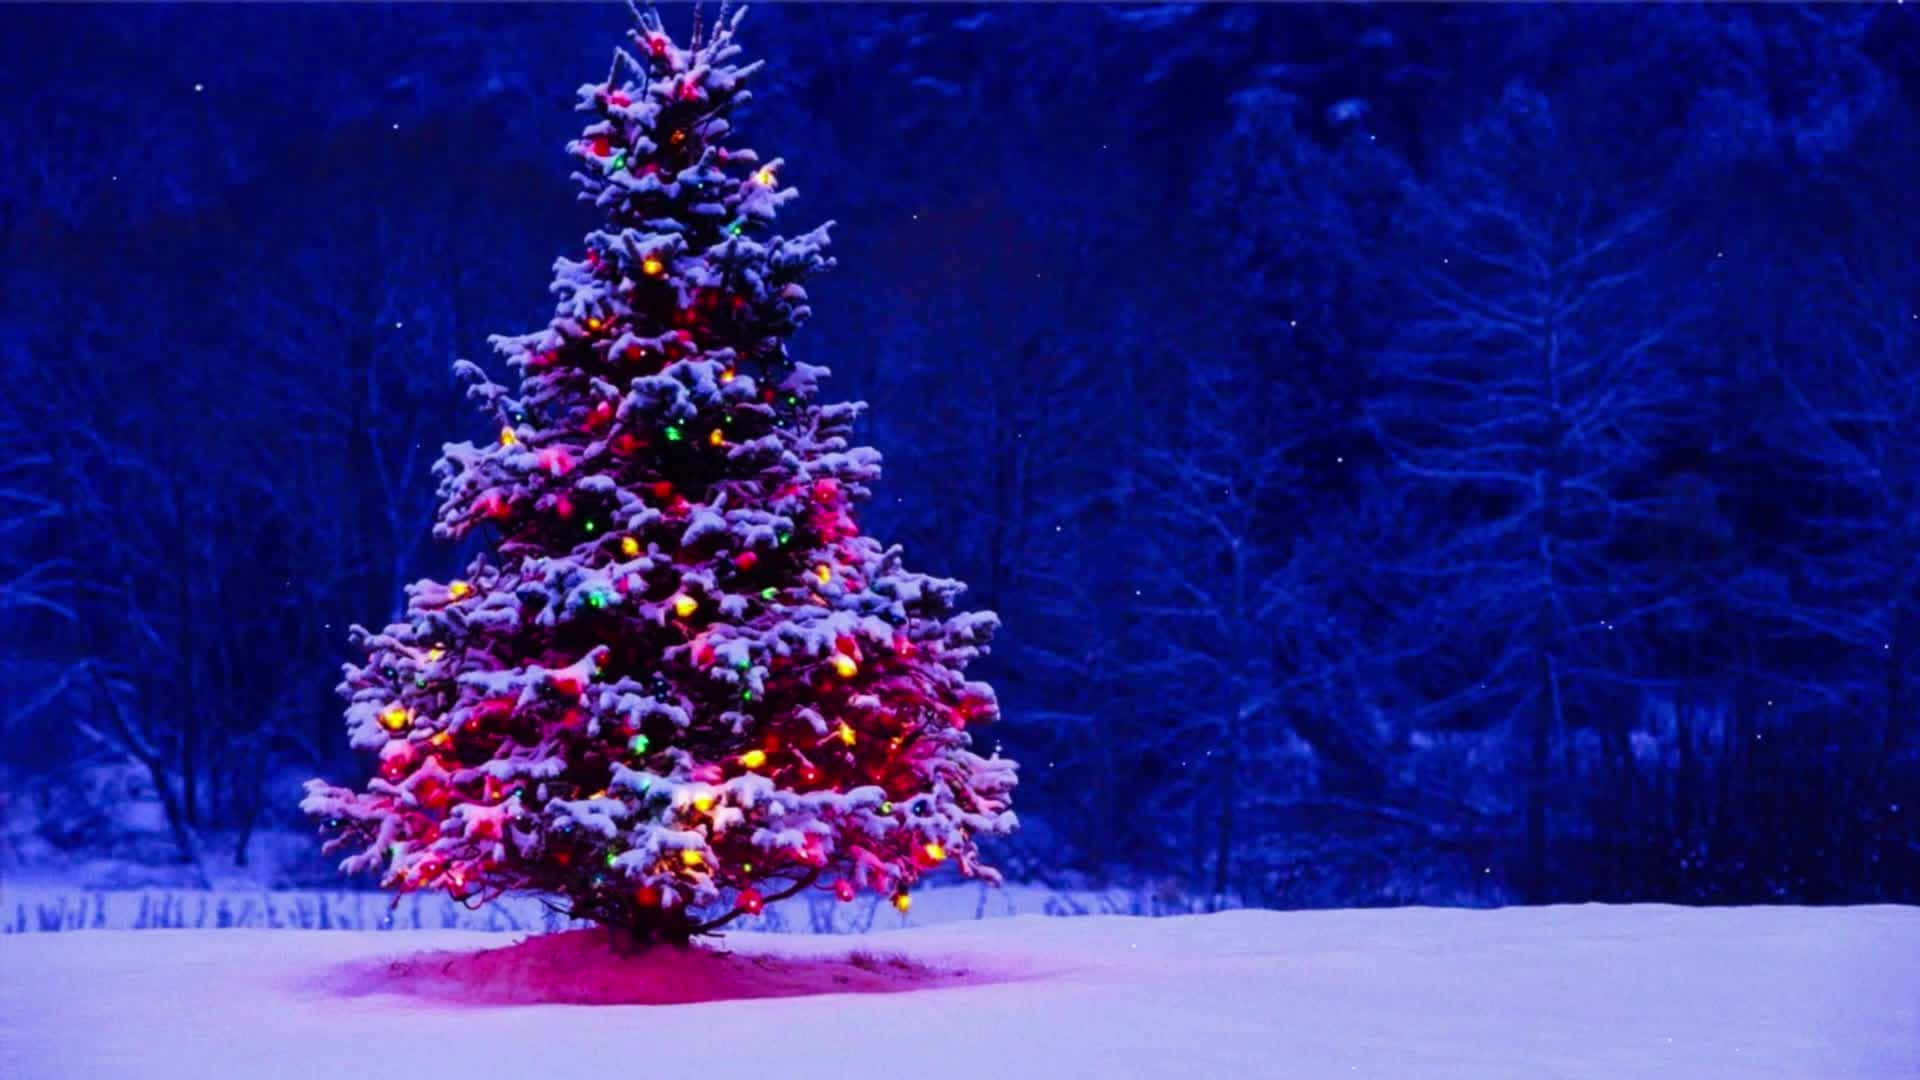 Hãy đón mùa lễ hội Giáng sinh với các hình nền Zoom mùa lễ hội 1920 X 1080 để tạo ra không khí Giáng sinh ấm áp trên các cuộc họp của bạn. Hãy tải hình ảnh này ngay để trang trí và truyền tải tinh thần mùa lễ hội.